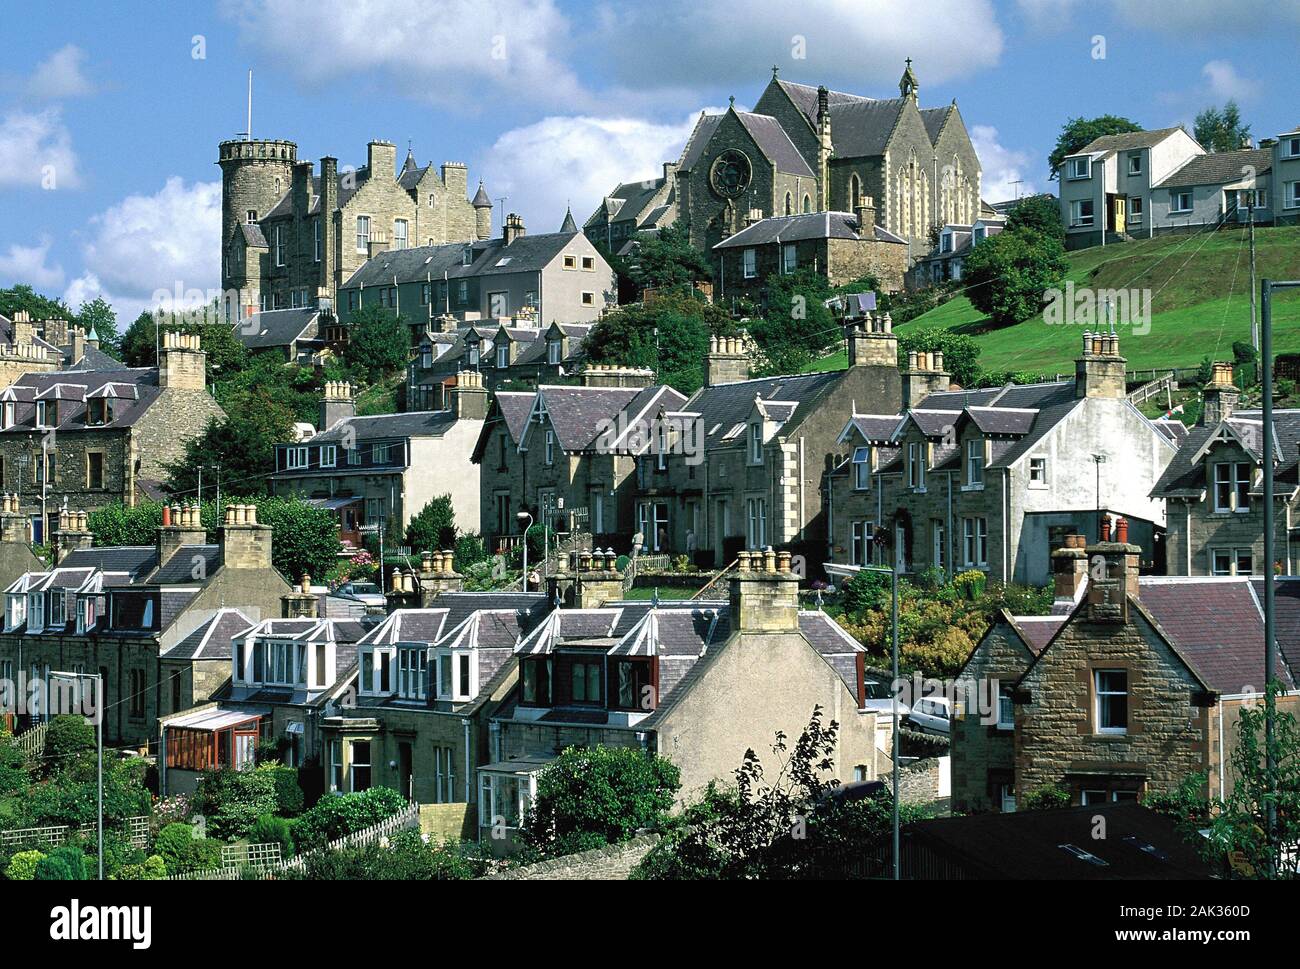 Typisch britische Häuser sind am Hang unterhalb einer Kirche in Selkirk gelegen. Selkirk liegt in der Region Mittelland in Schottland entfernt. (Undat Stockfoto